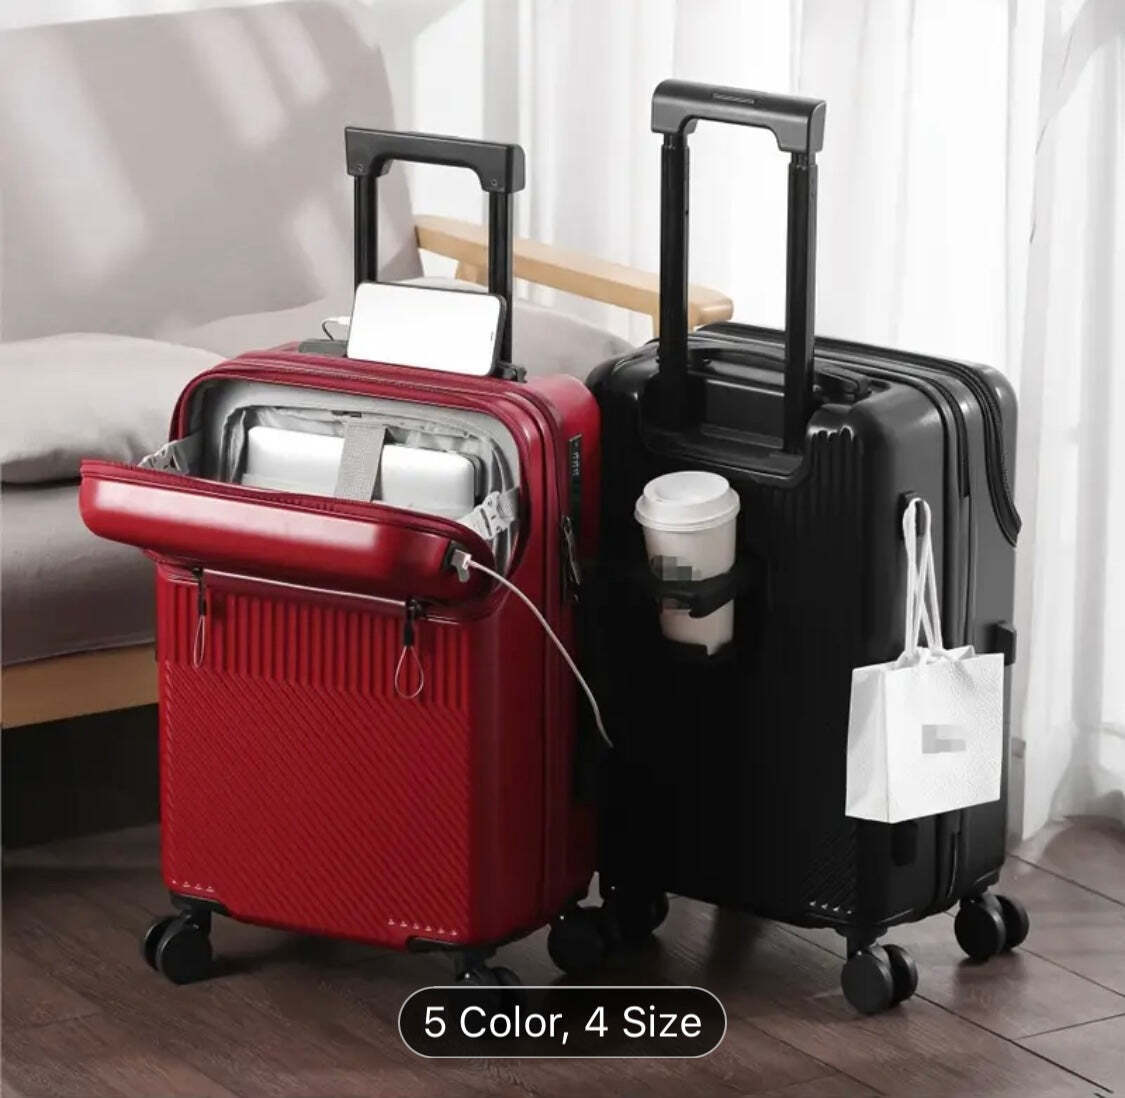 Viral Ultimate traveling suitcase 2 day shipping TIK TOK BESTSELLER